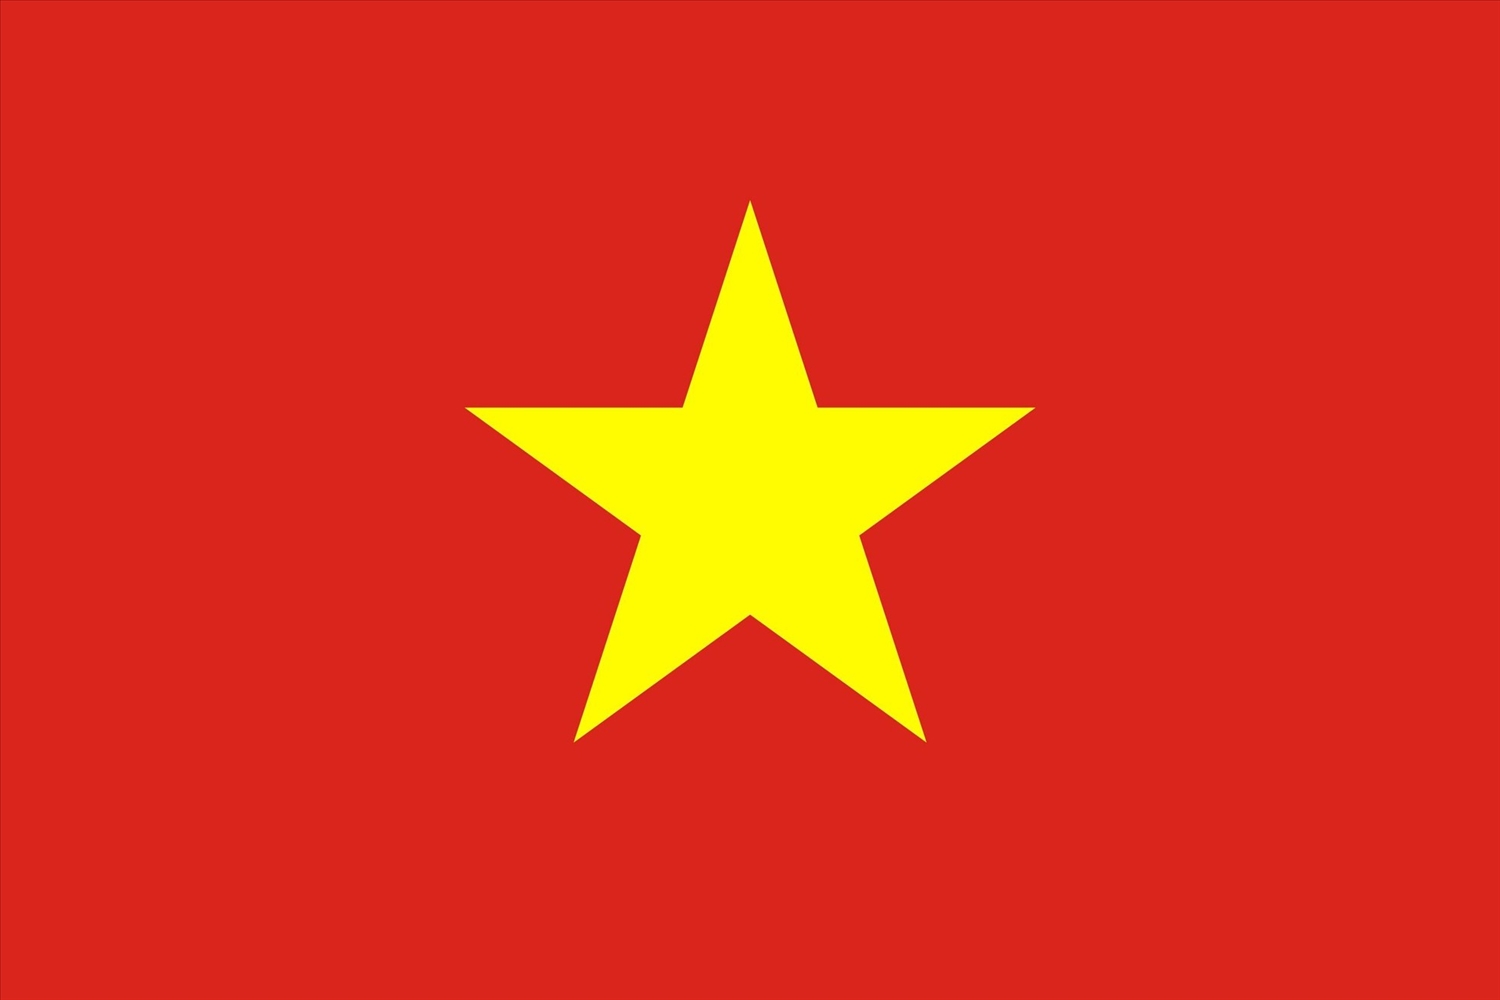 Cờ đỏ sao vàng - Biểu tượng thiêng liêng đặc biệt của dân tộc Việt ...